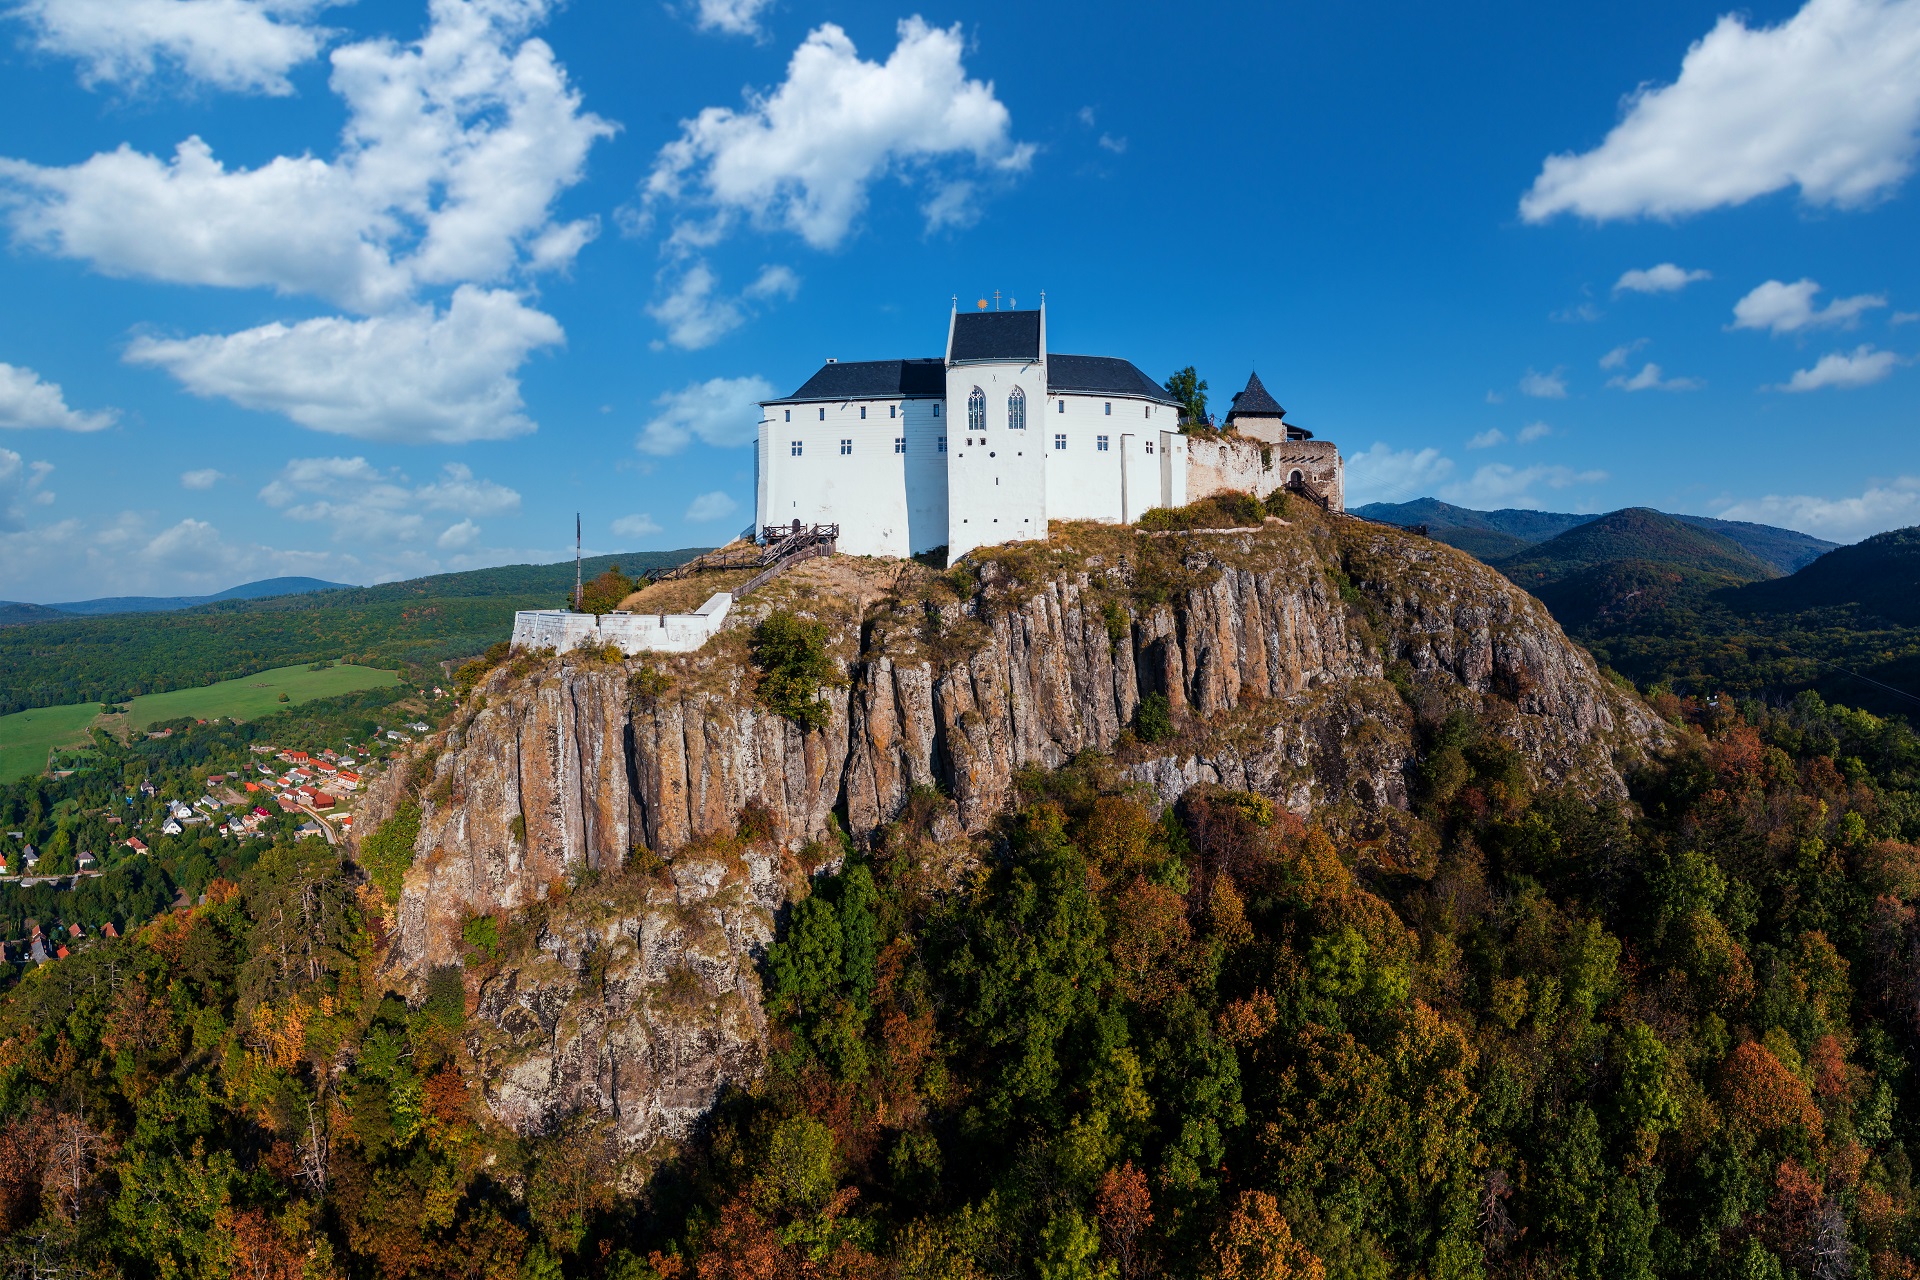 匈牙利最美城堡之一—火山锥上的菲泽尔城堡